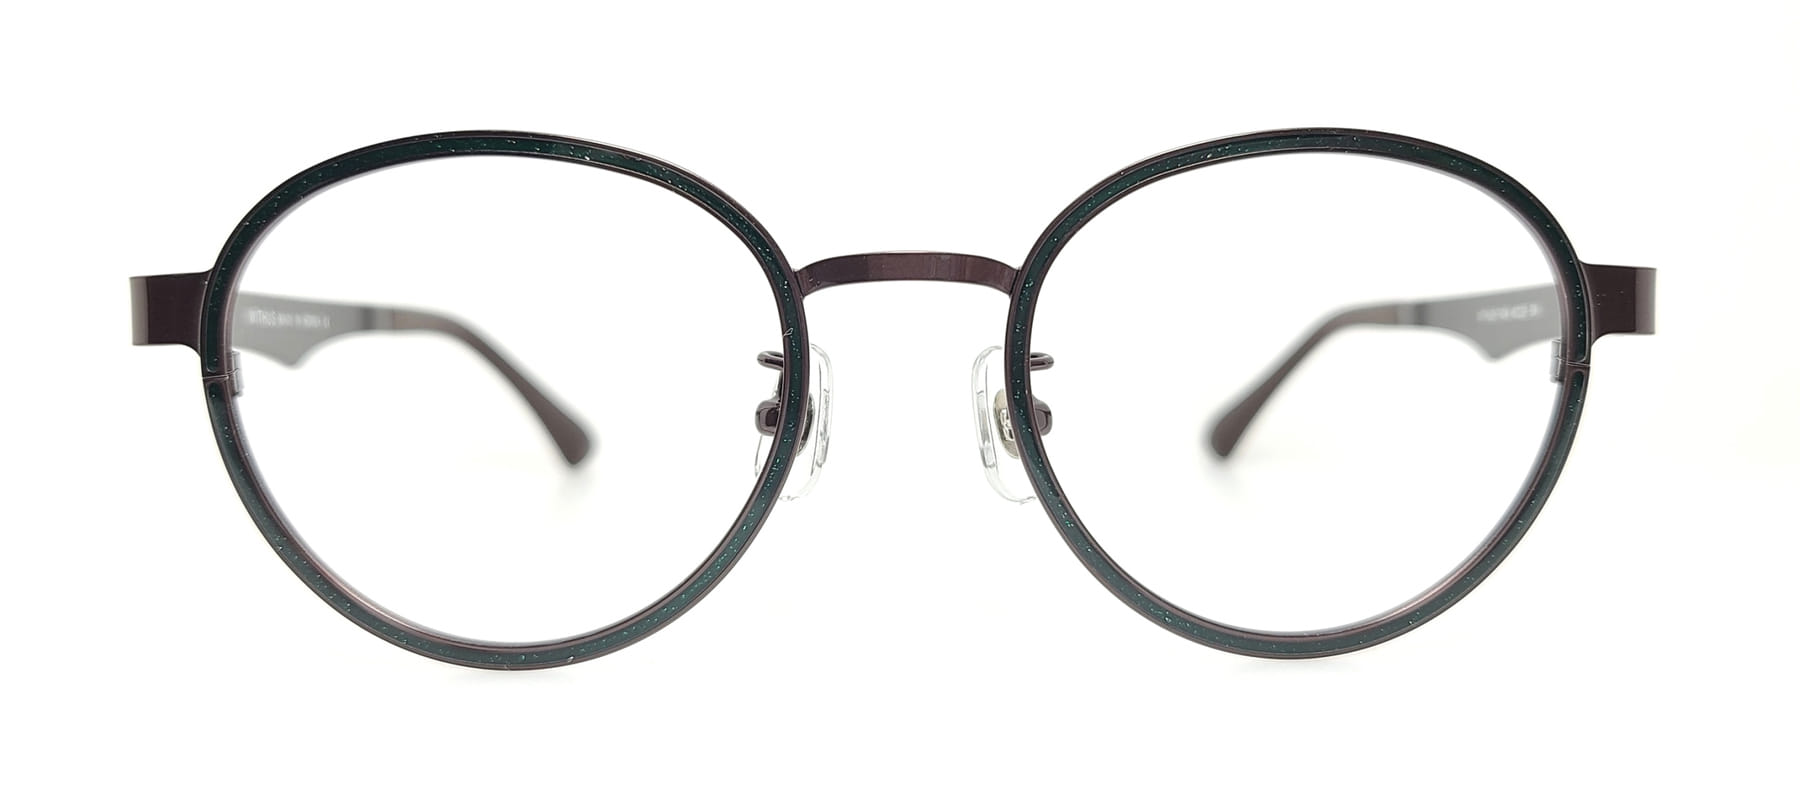 WITHUS-7404, Korean glasses, sunglasses, eyeglasses, glasses